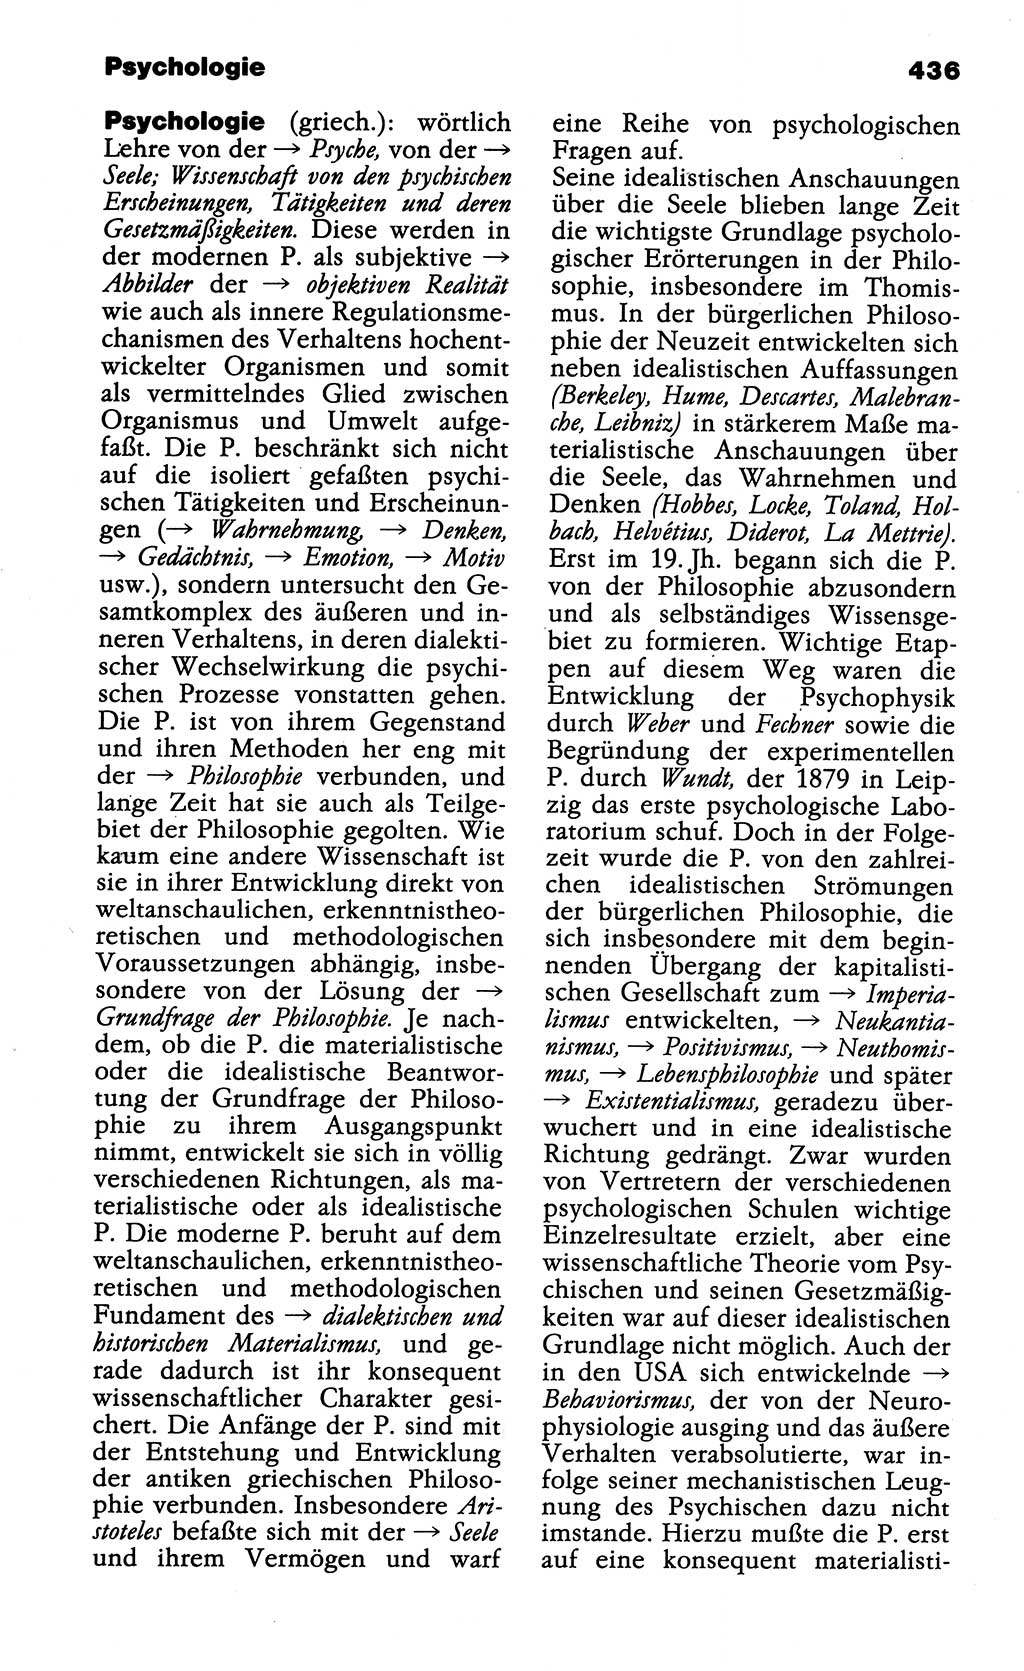 Wörterbuch der marxistisch-leninistischen Philosophie [Deutsche Demokratische Republik (DDR)] 1985, Seite 436 (Wb. ML Phil. DDR 1985, S. 436)